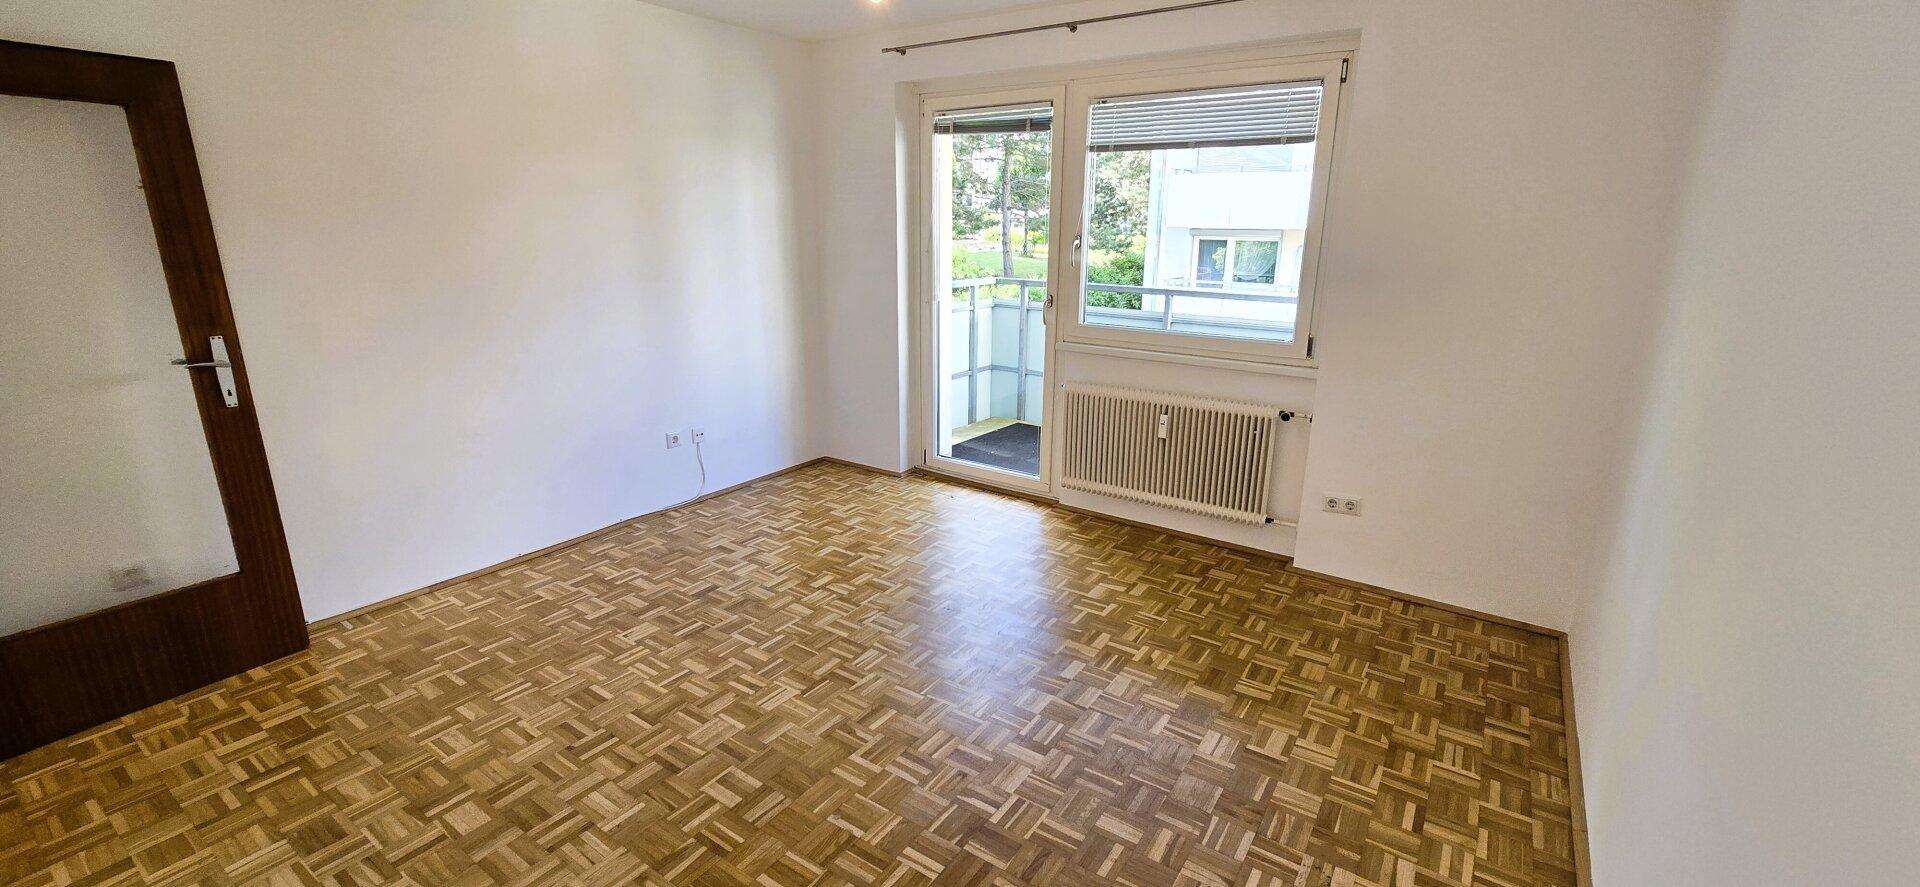 Komfortable 1-Zimmer-Wohnung mit Balkon in Wien Döbling